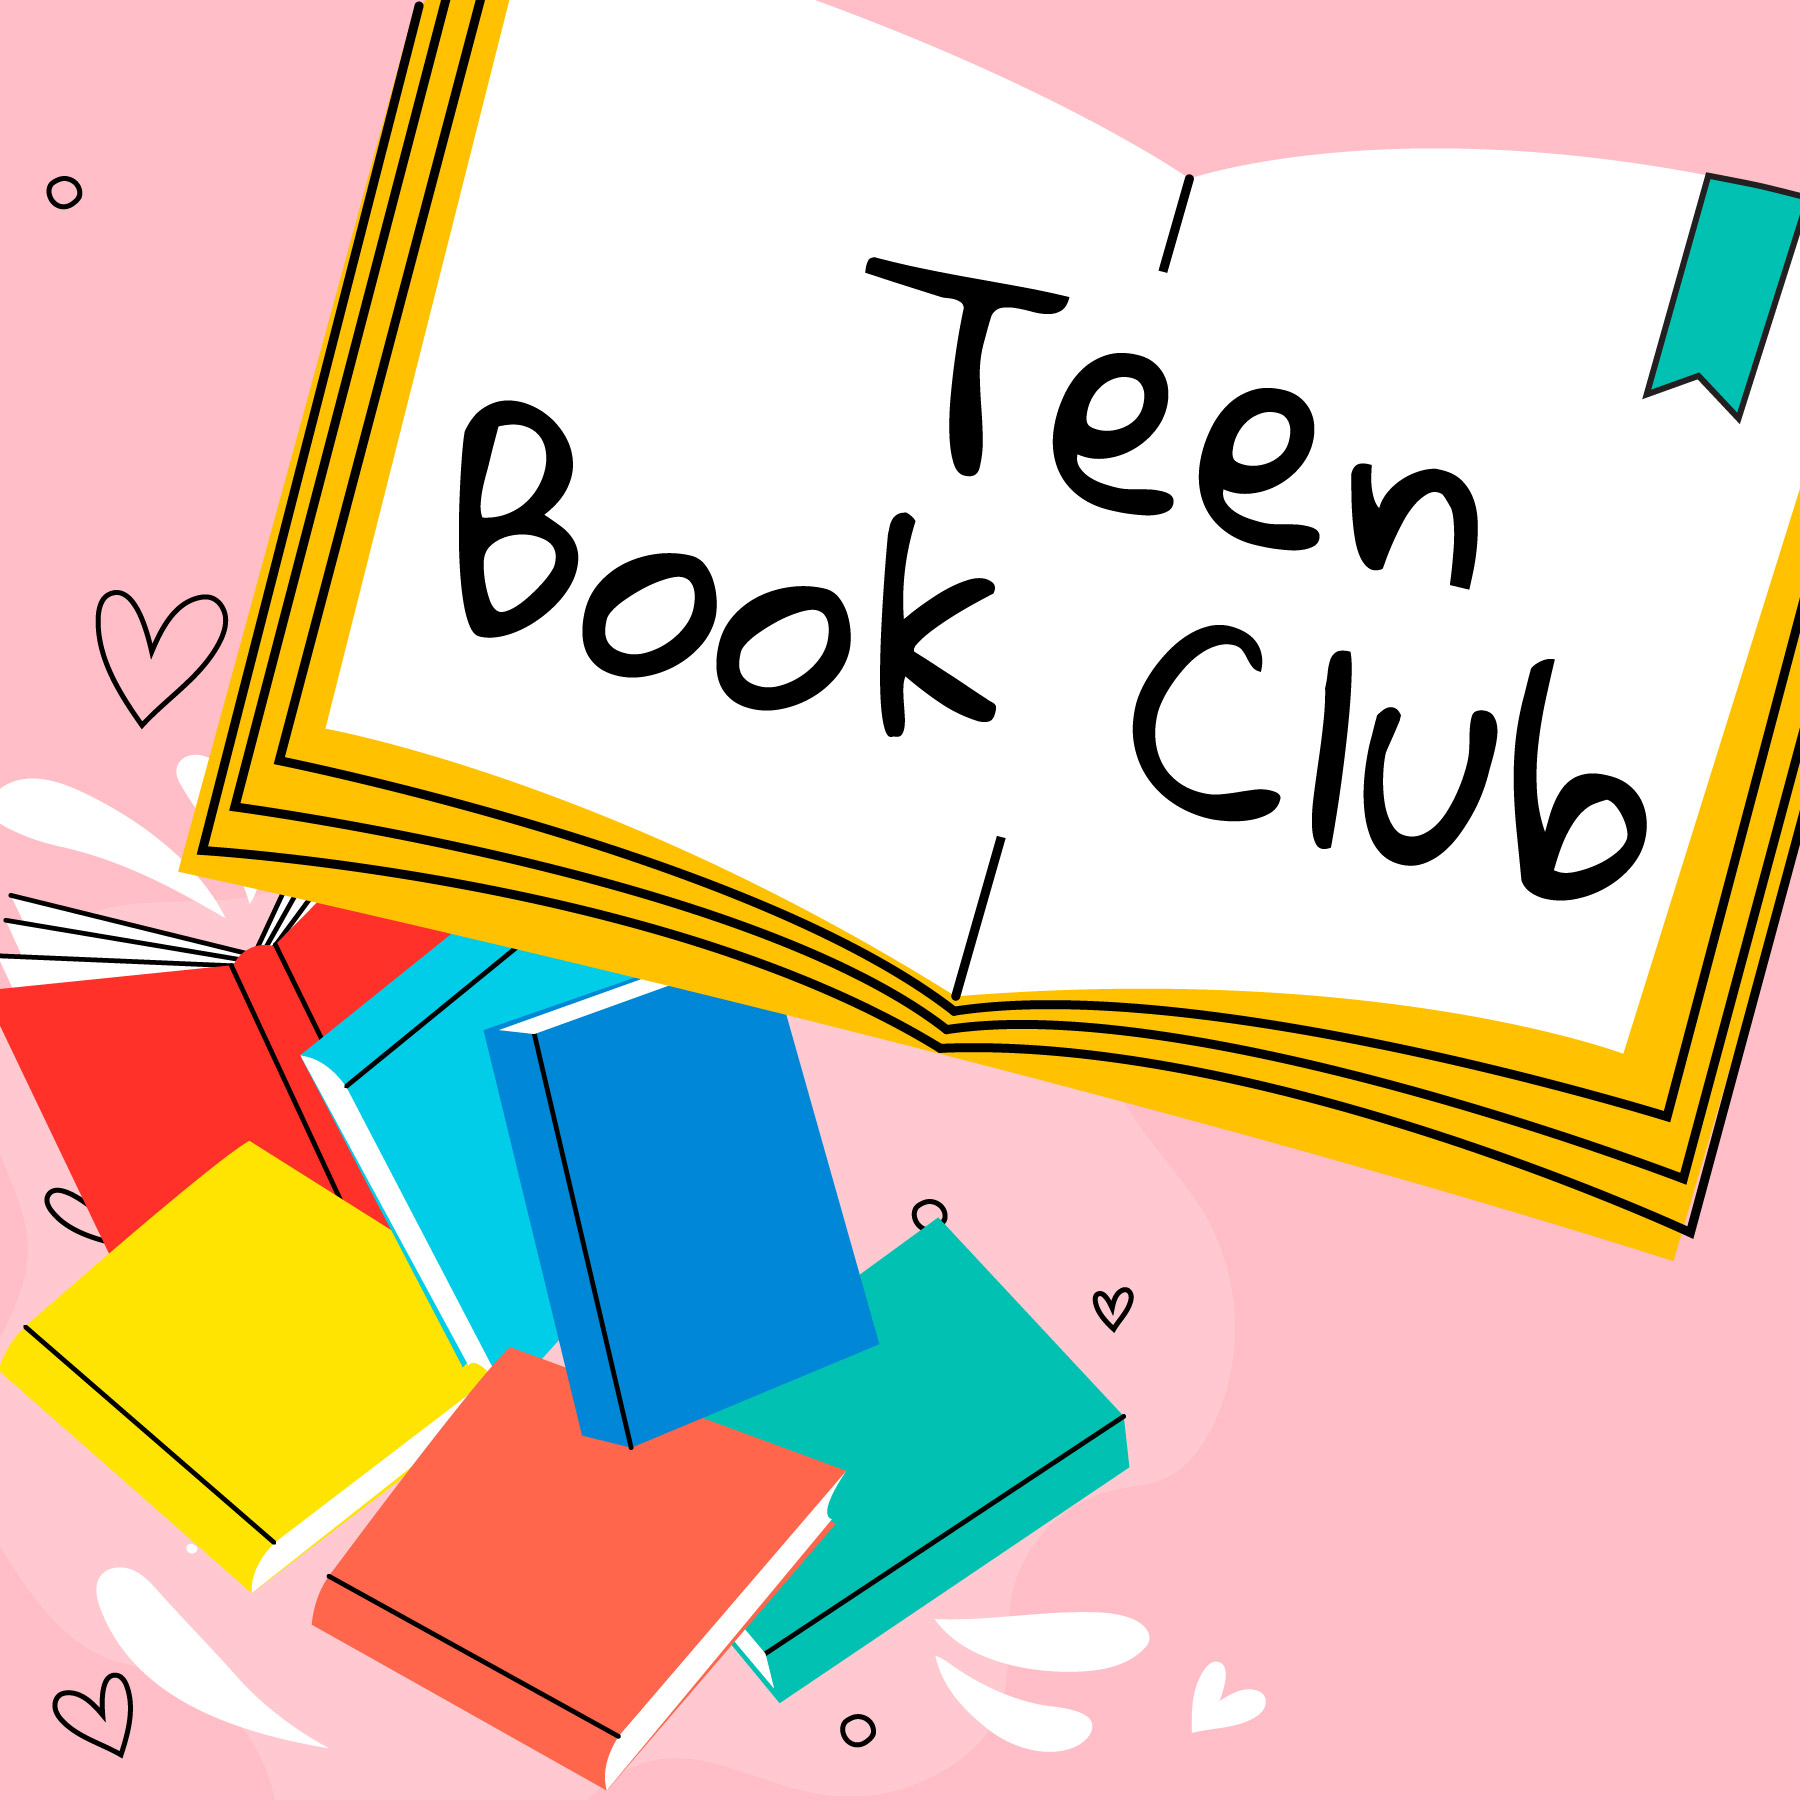 Open book with "Teen Book Club" written inside